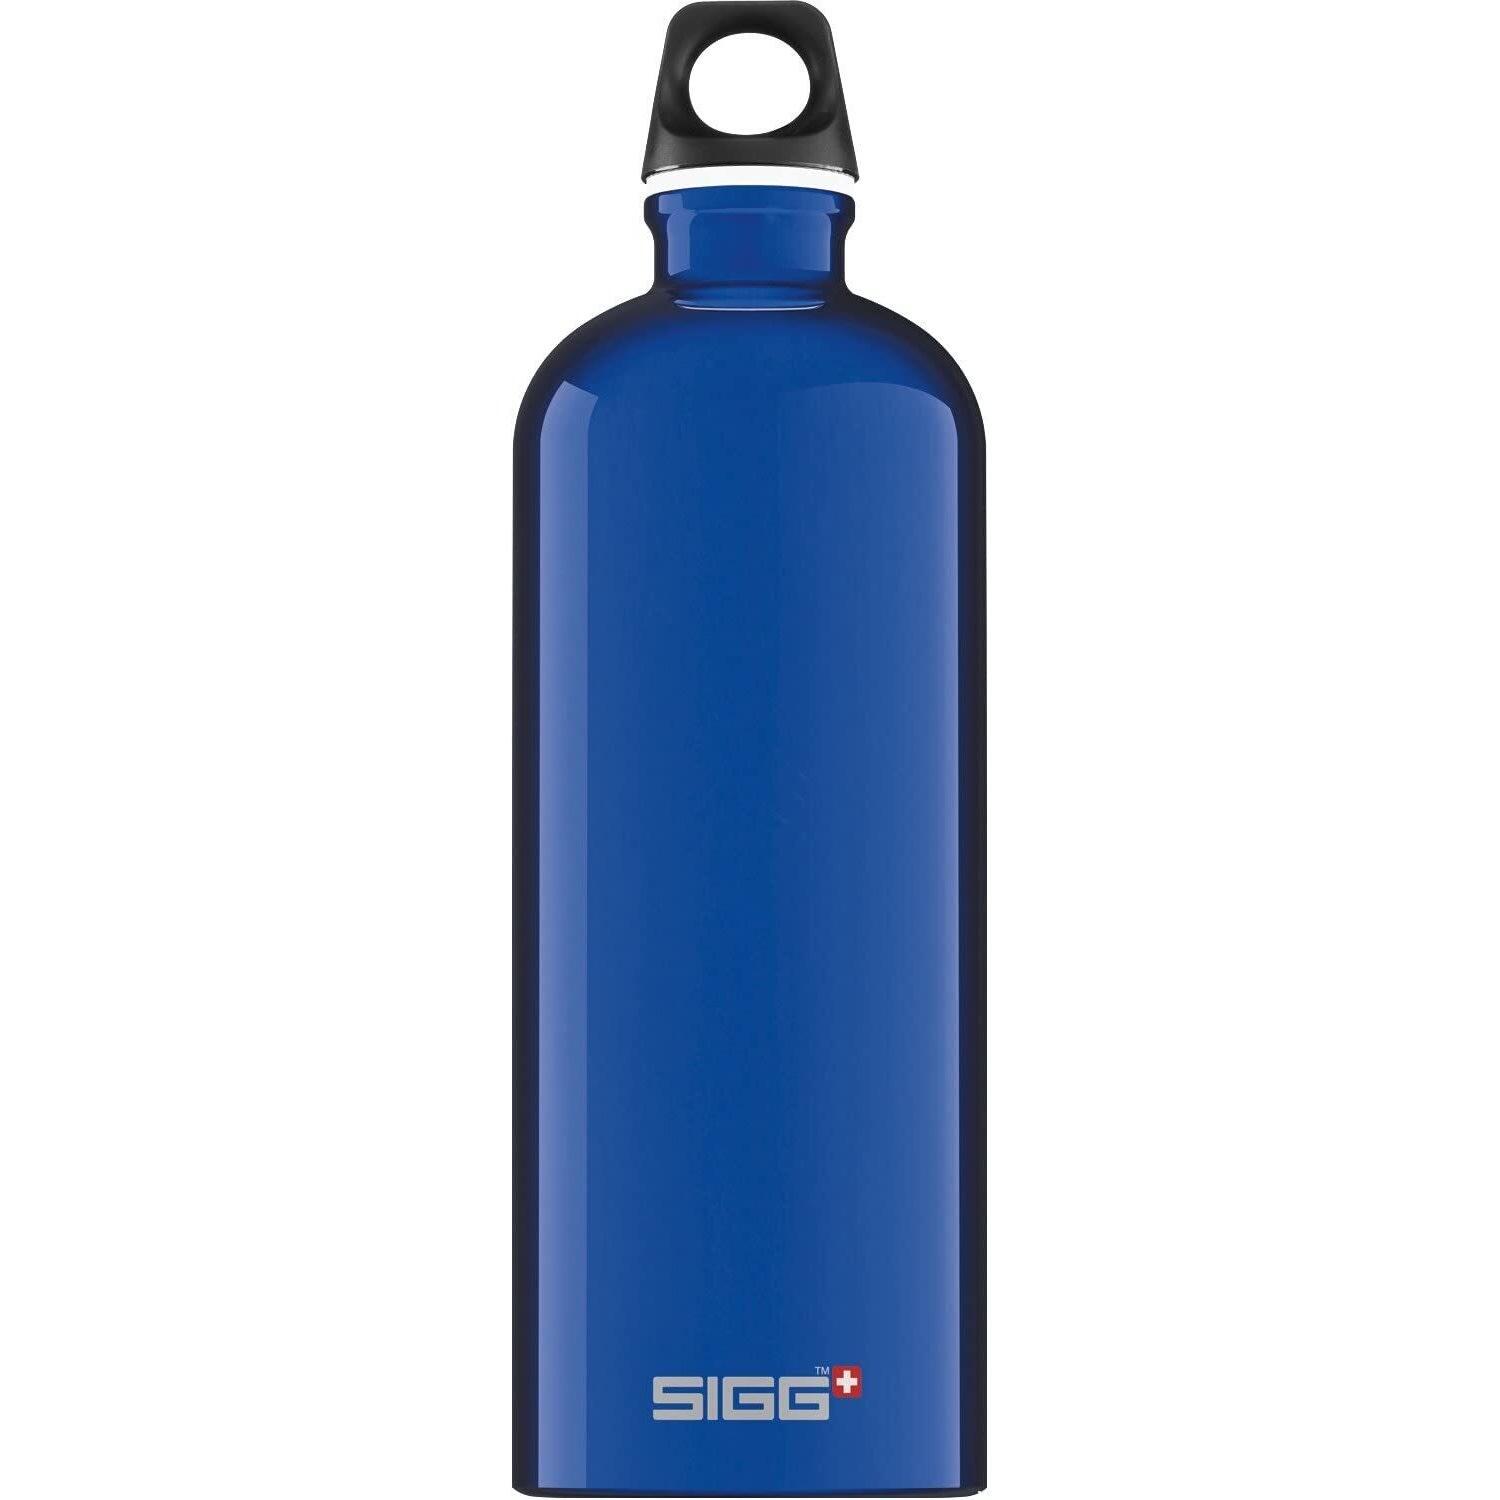 SIGG Travel Water Bottle (Dark Blue)